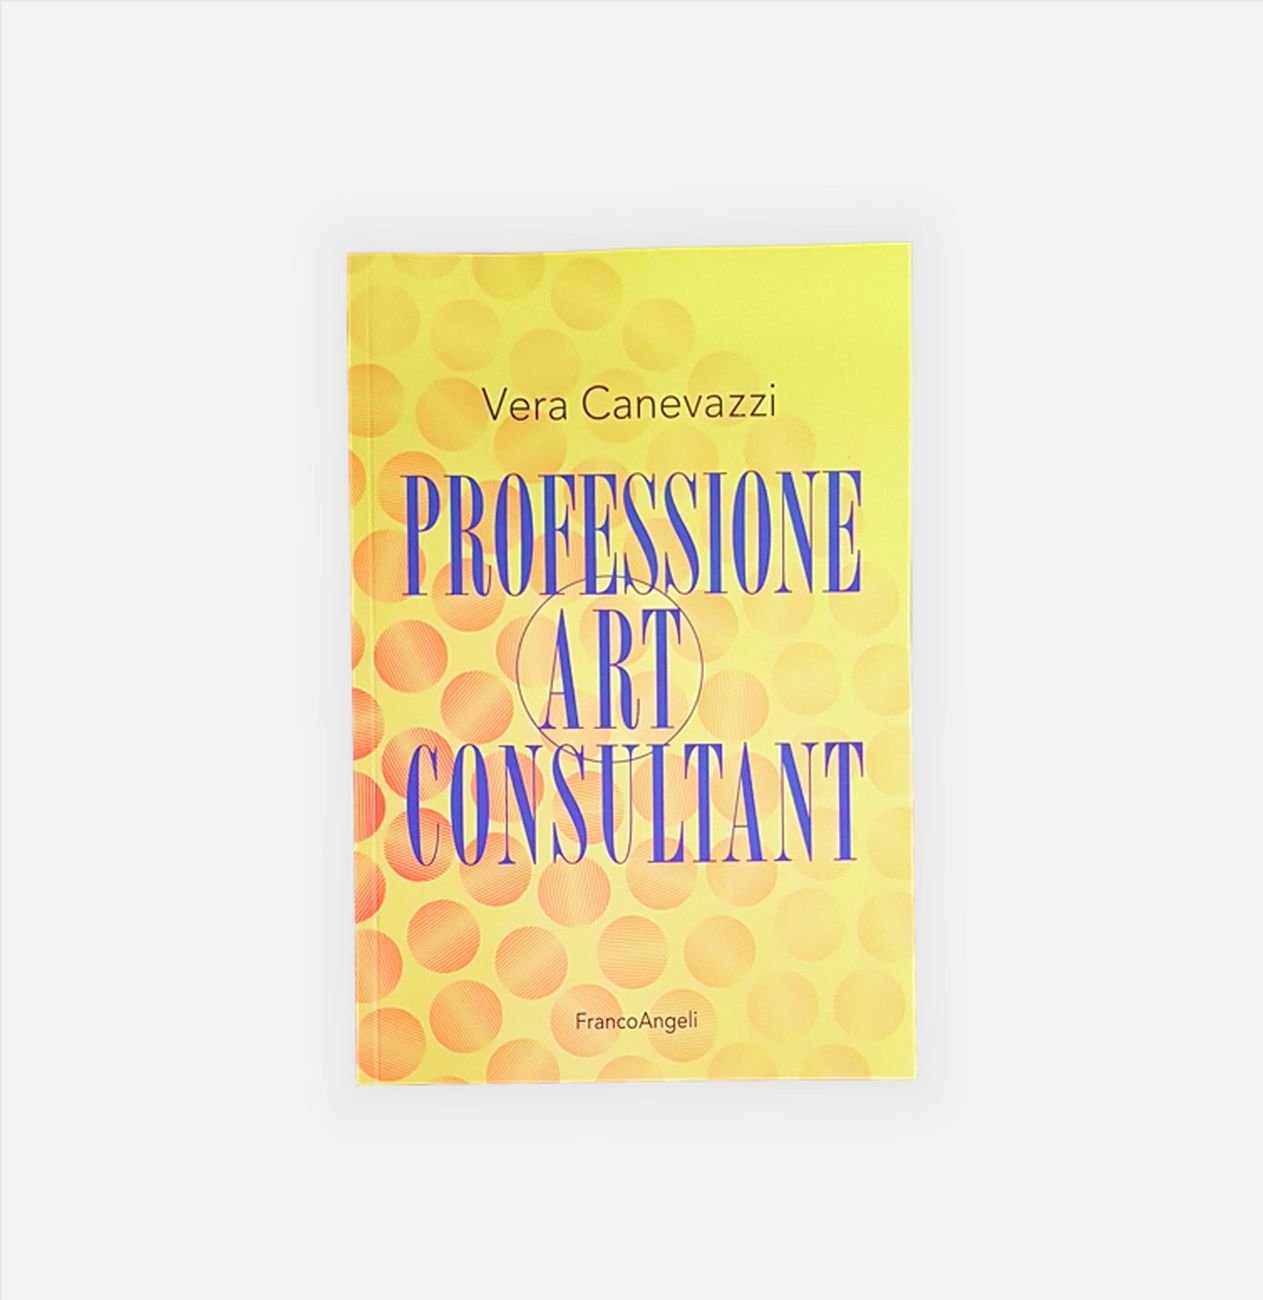 Vera Canevazzi – Professione Art Consultant (Franco Angeli, Milano 2020)